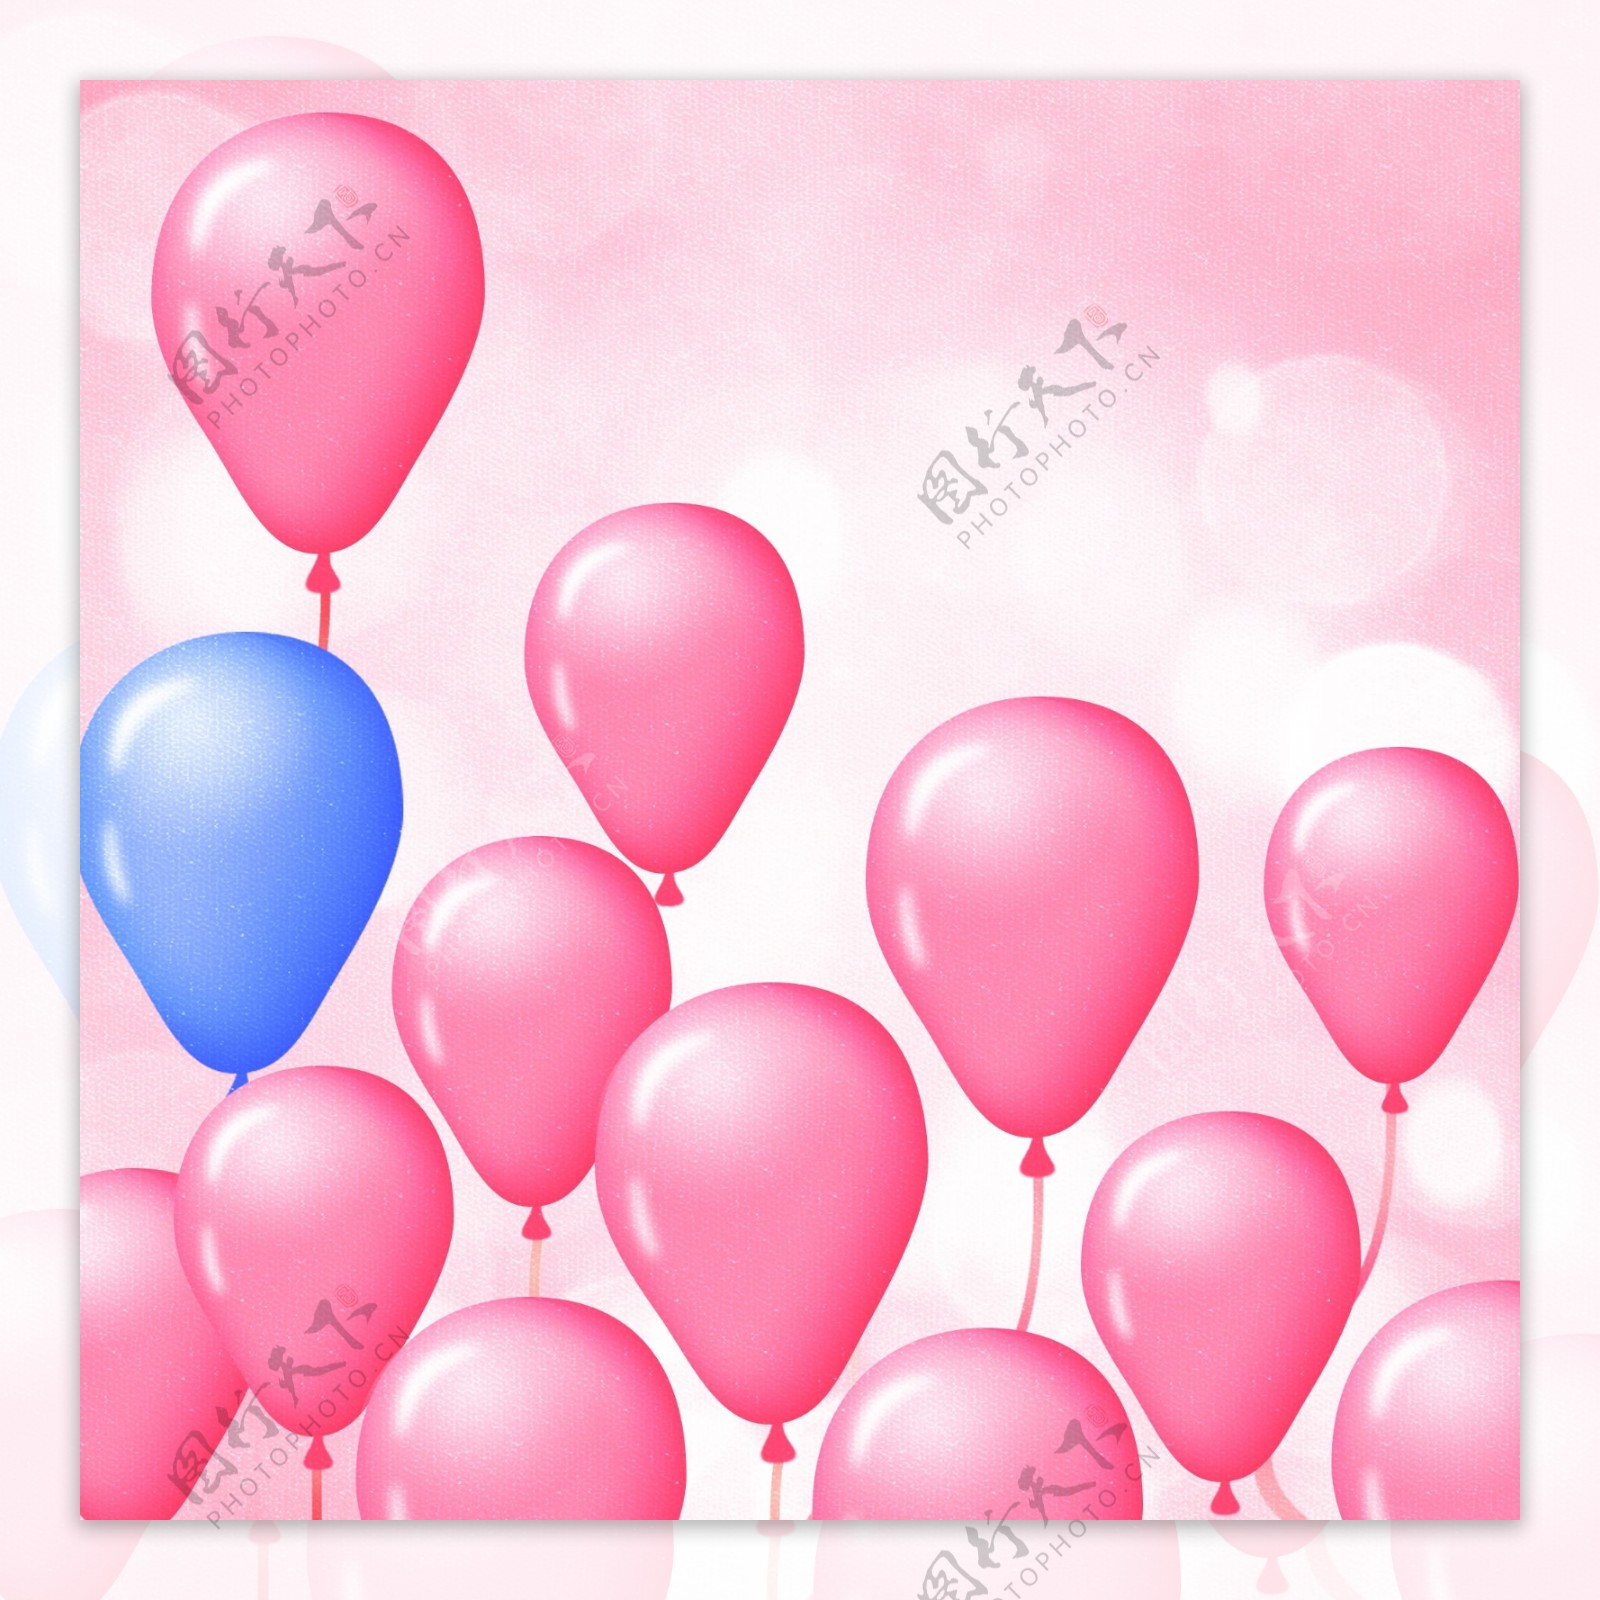 原创粉色唯美气球光斑浪漫背景